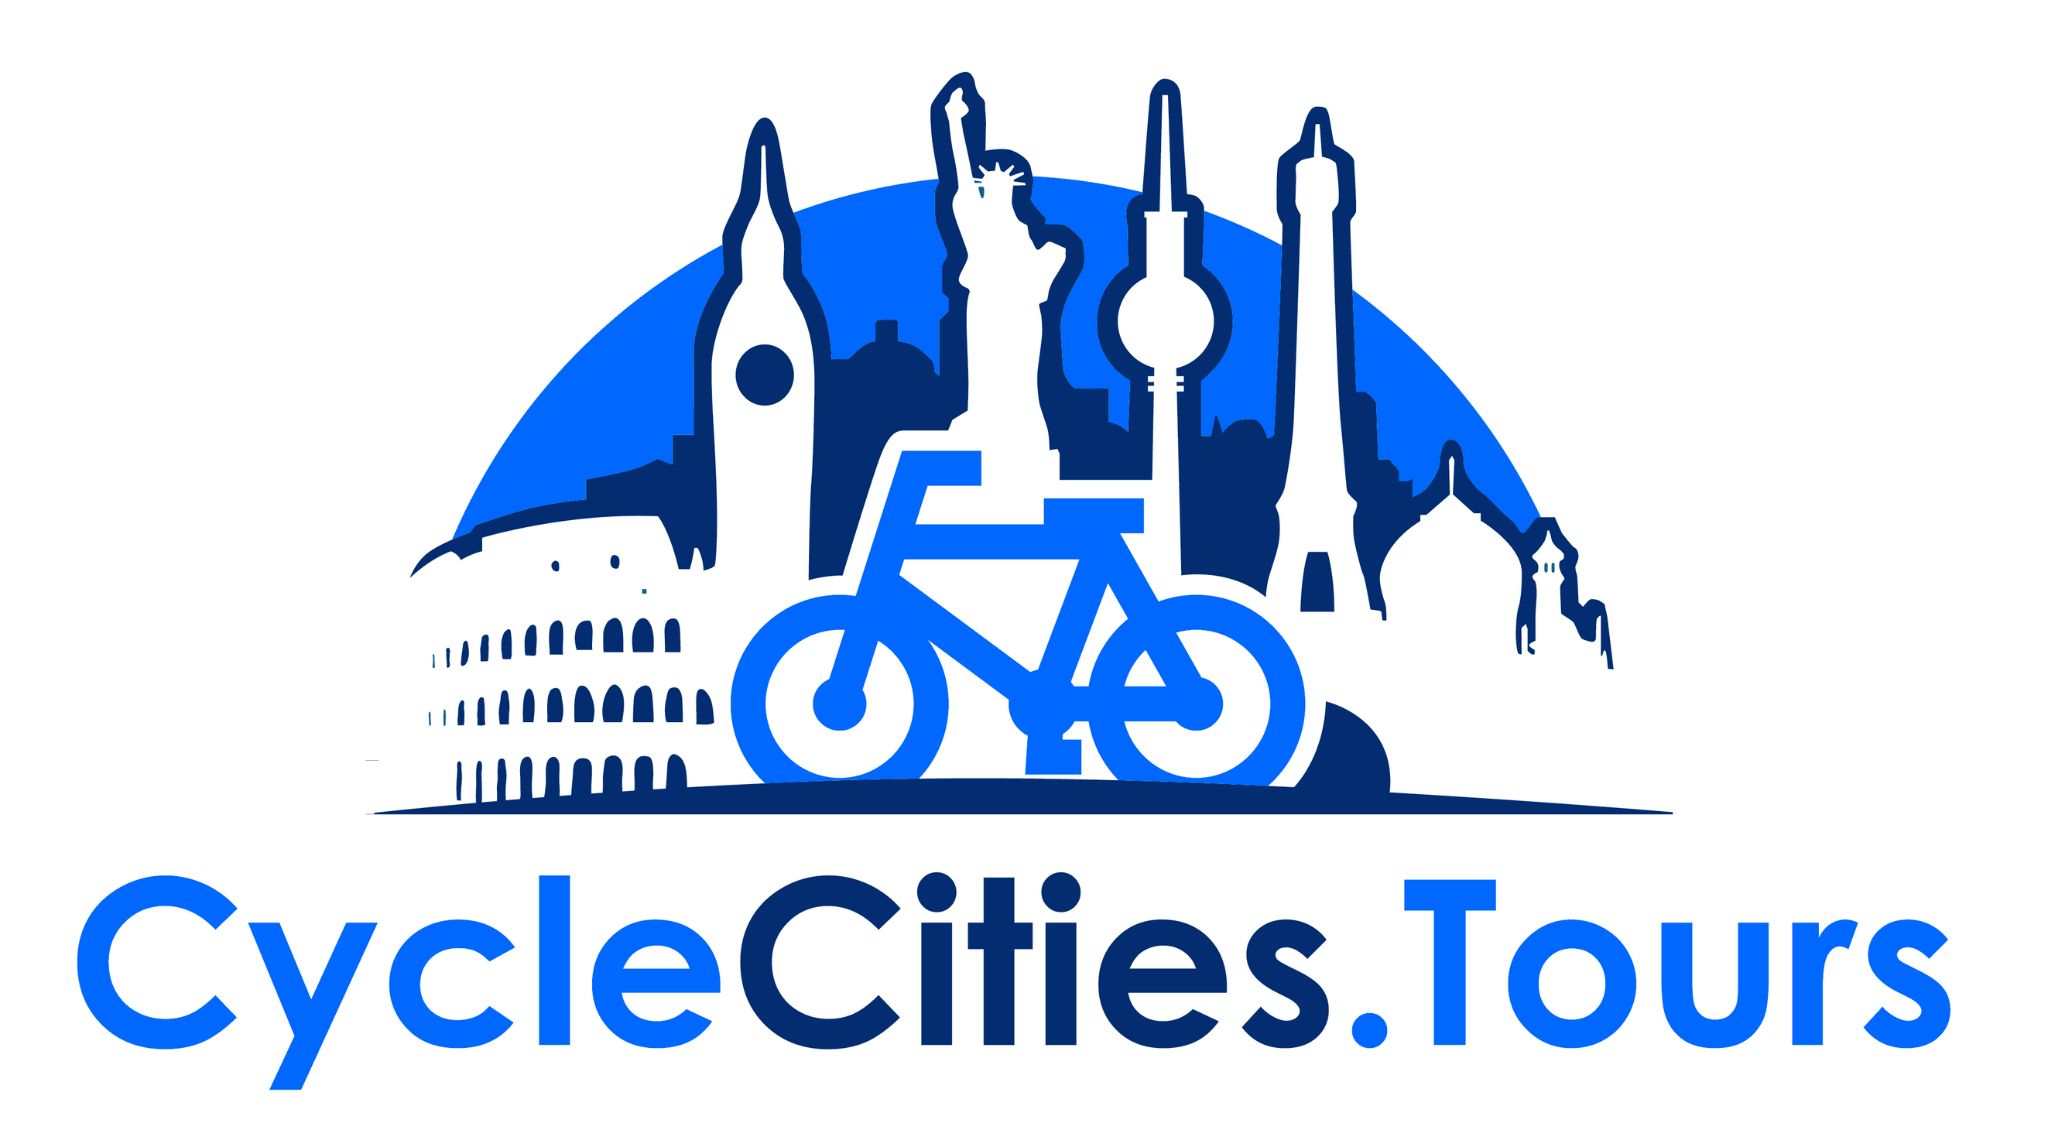 CycleCities.tours Logo